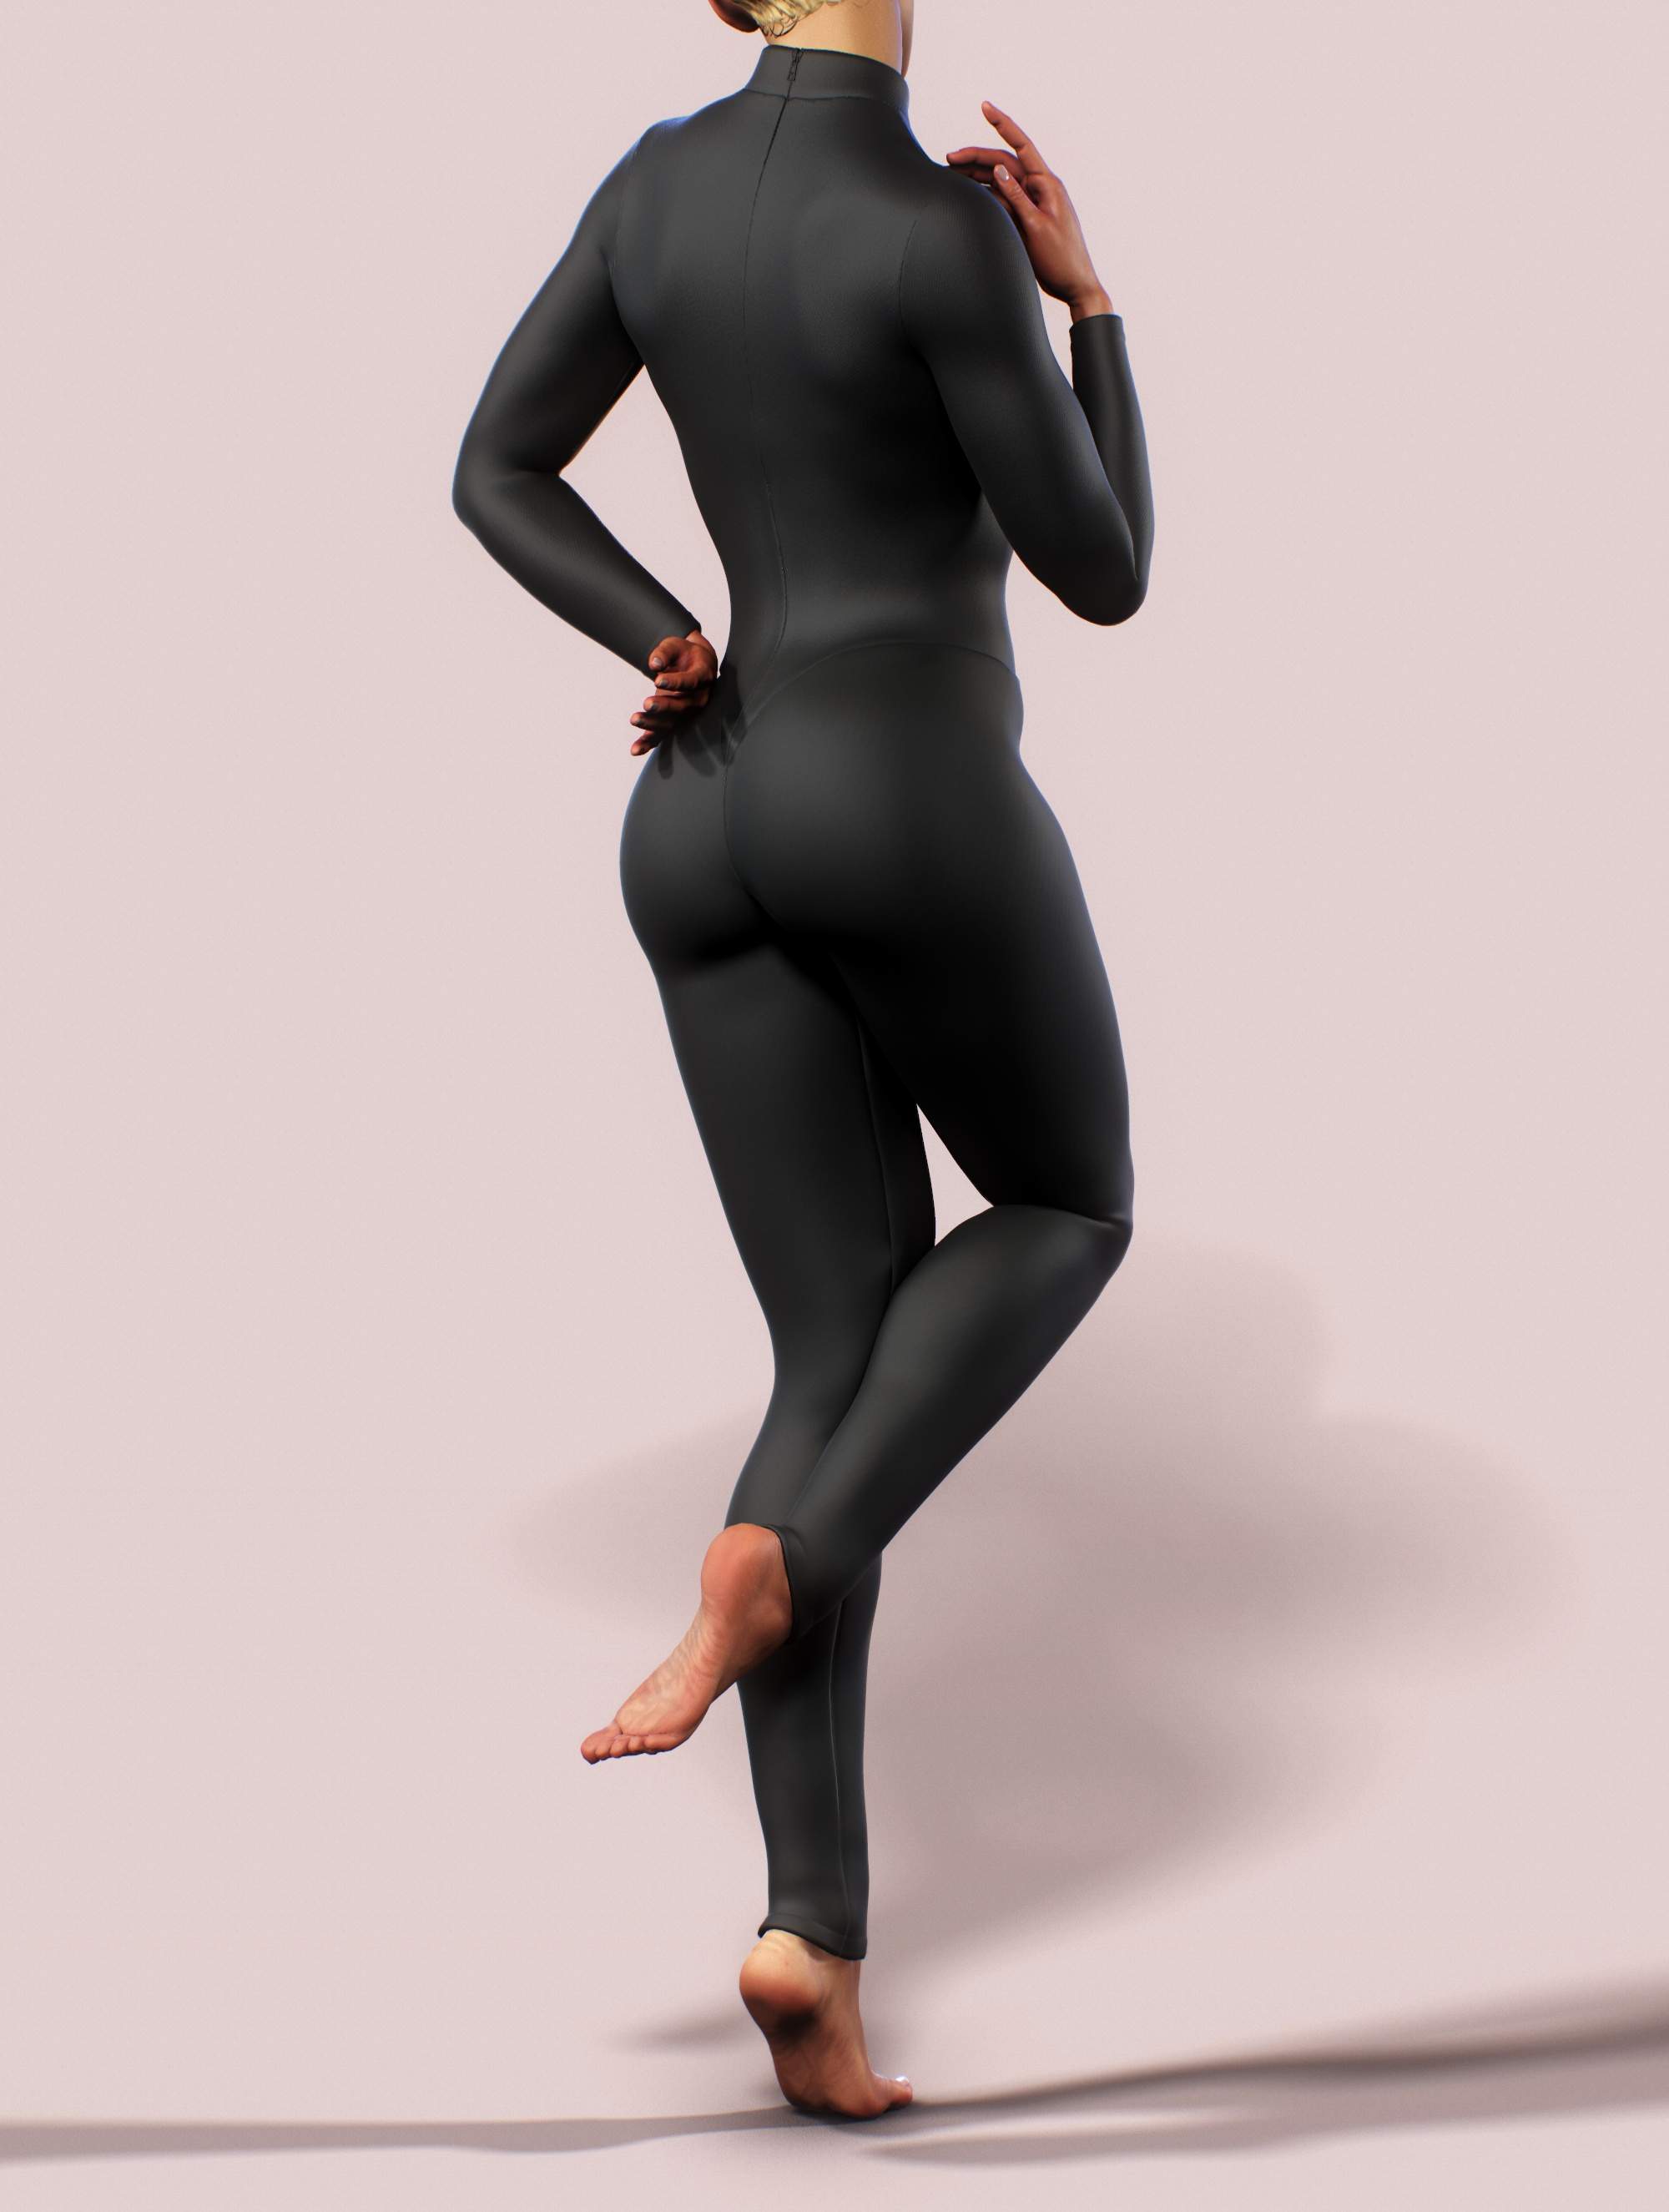 Black Unitard Bodysuit Catsuit Jumpsuit Brazilian Workout